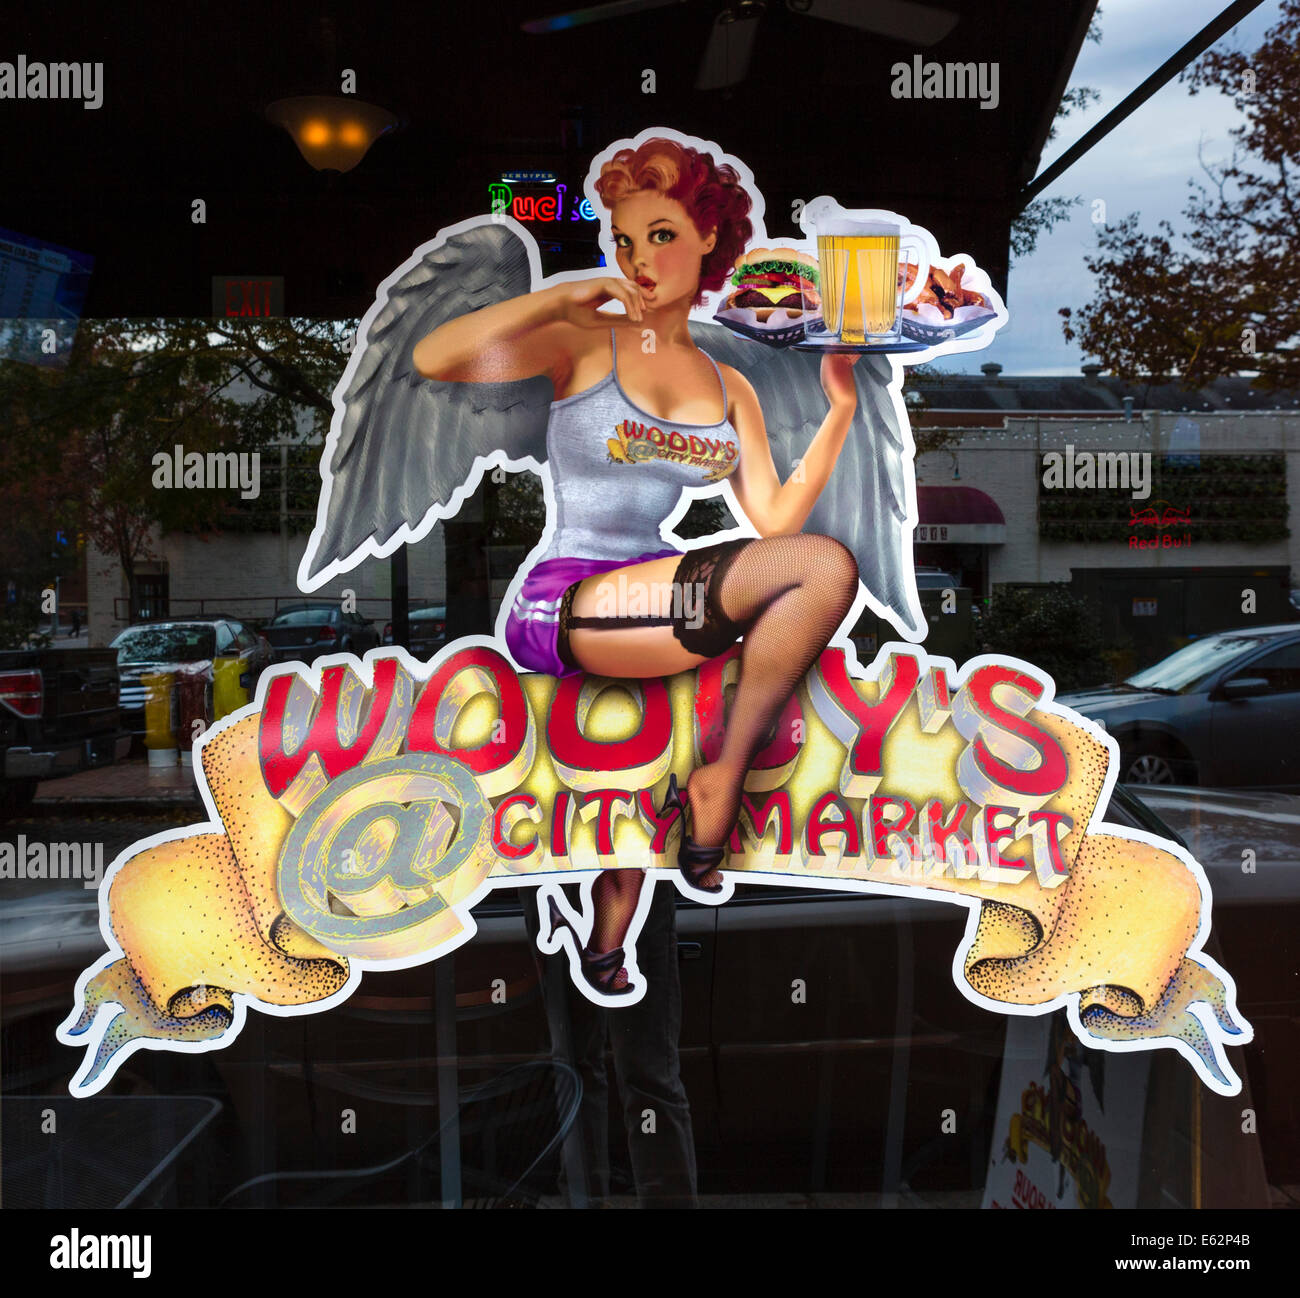 Melden Sie sich auf das Fenster des Woody's Restaurant im Stadtteil City Market, Raleigh, North Carolina, USA Stockfoto